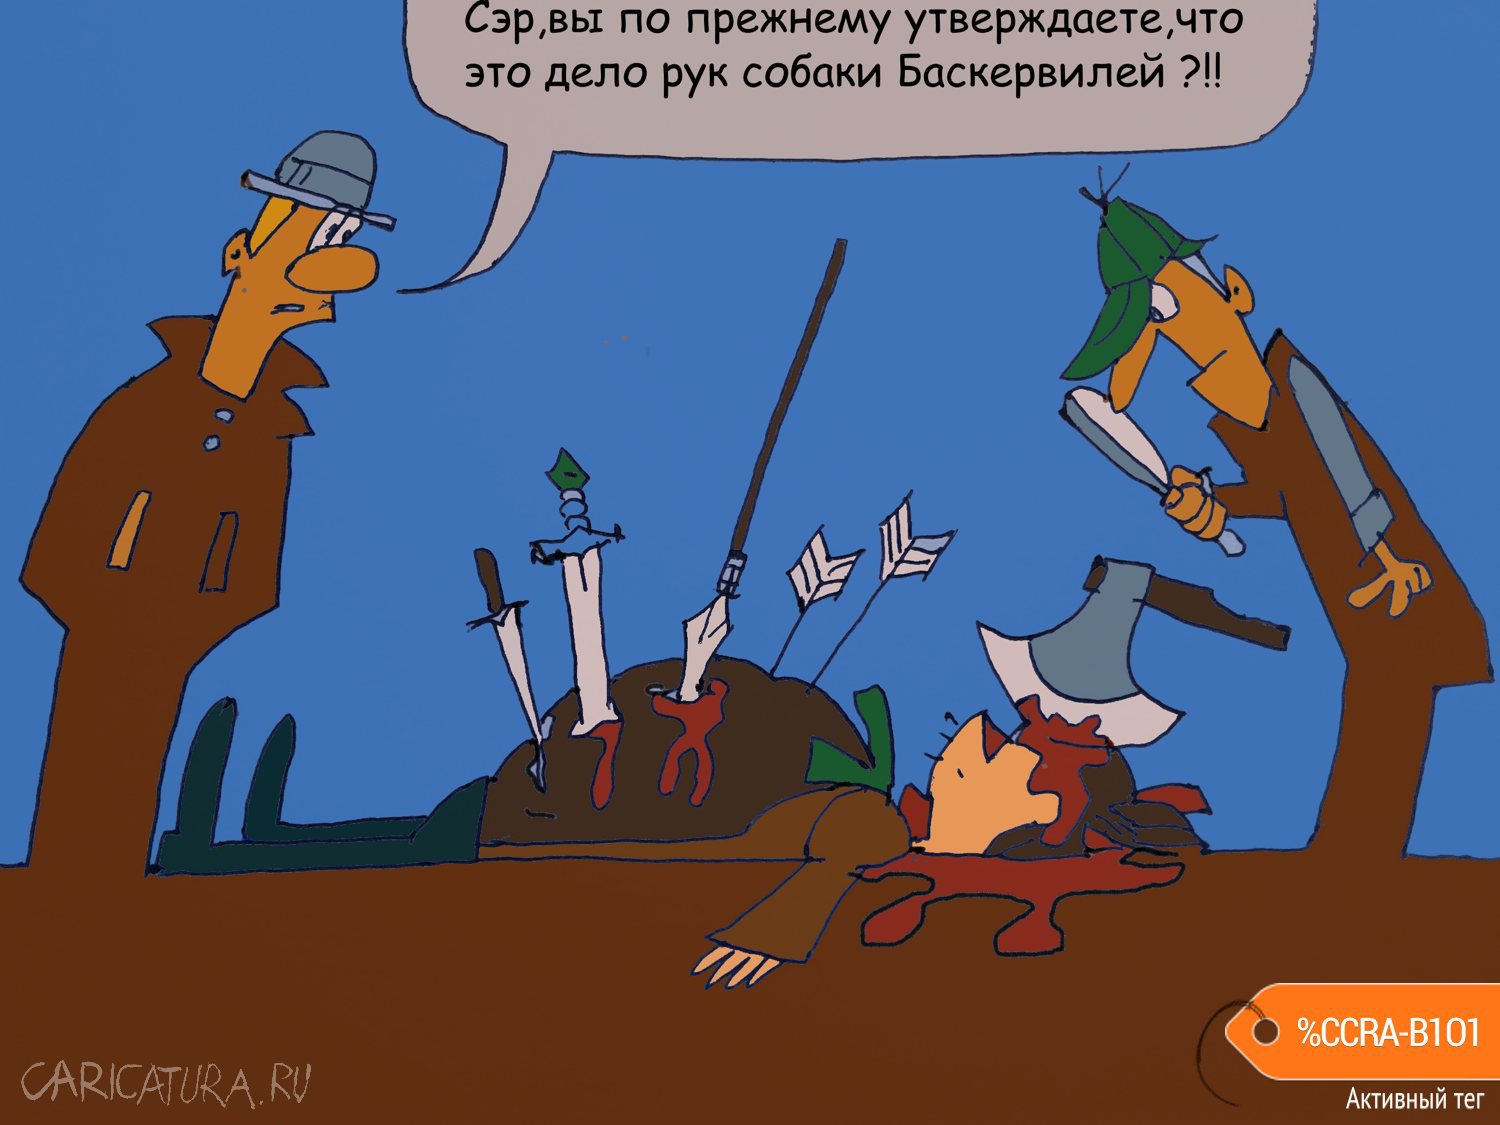 Карикатура "Шерлок Холмс и К.", Юрий Величко